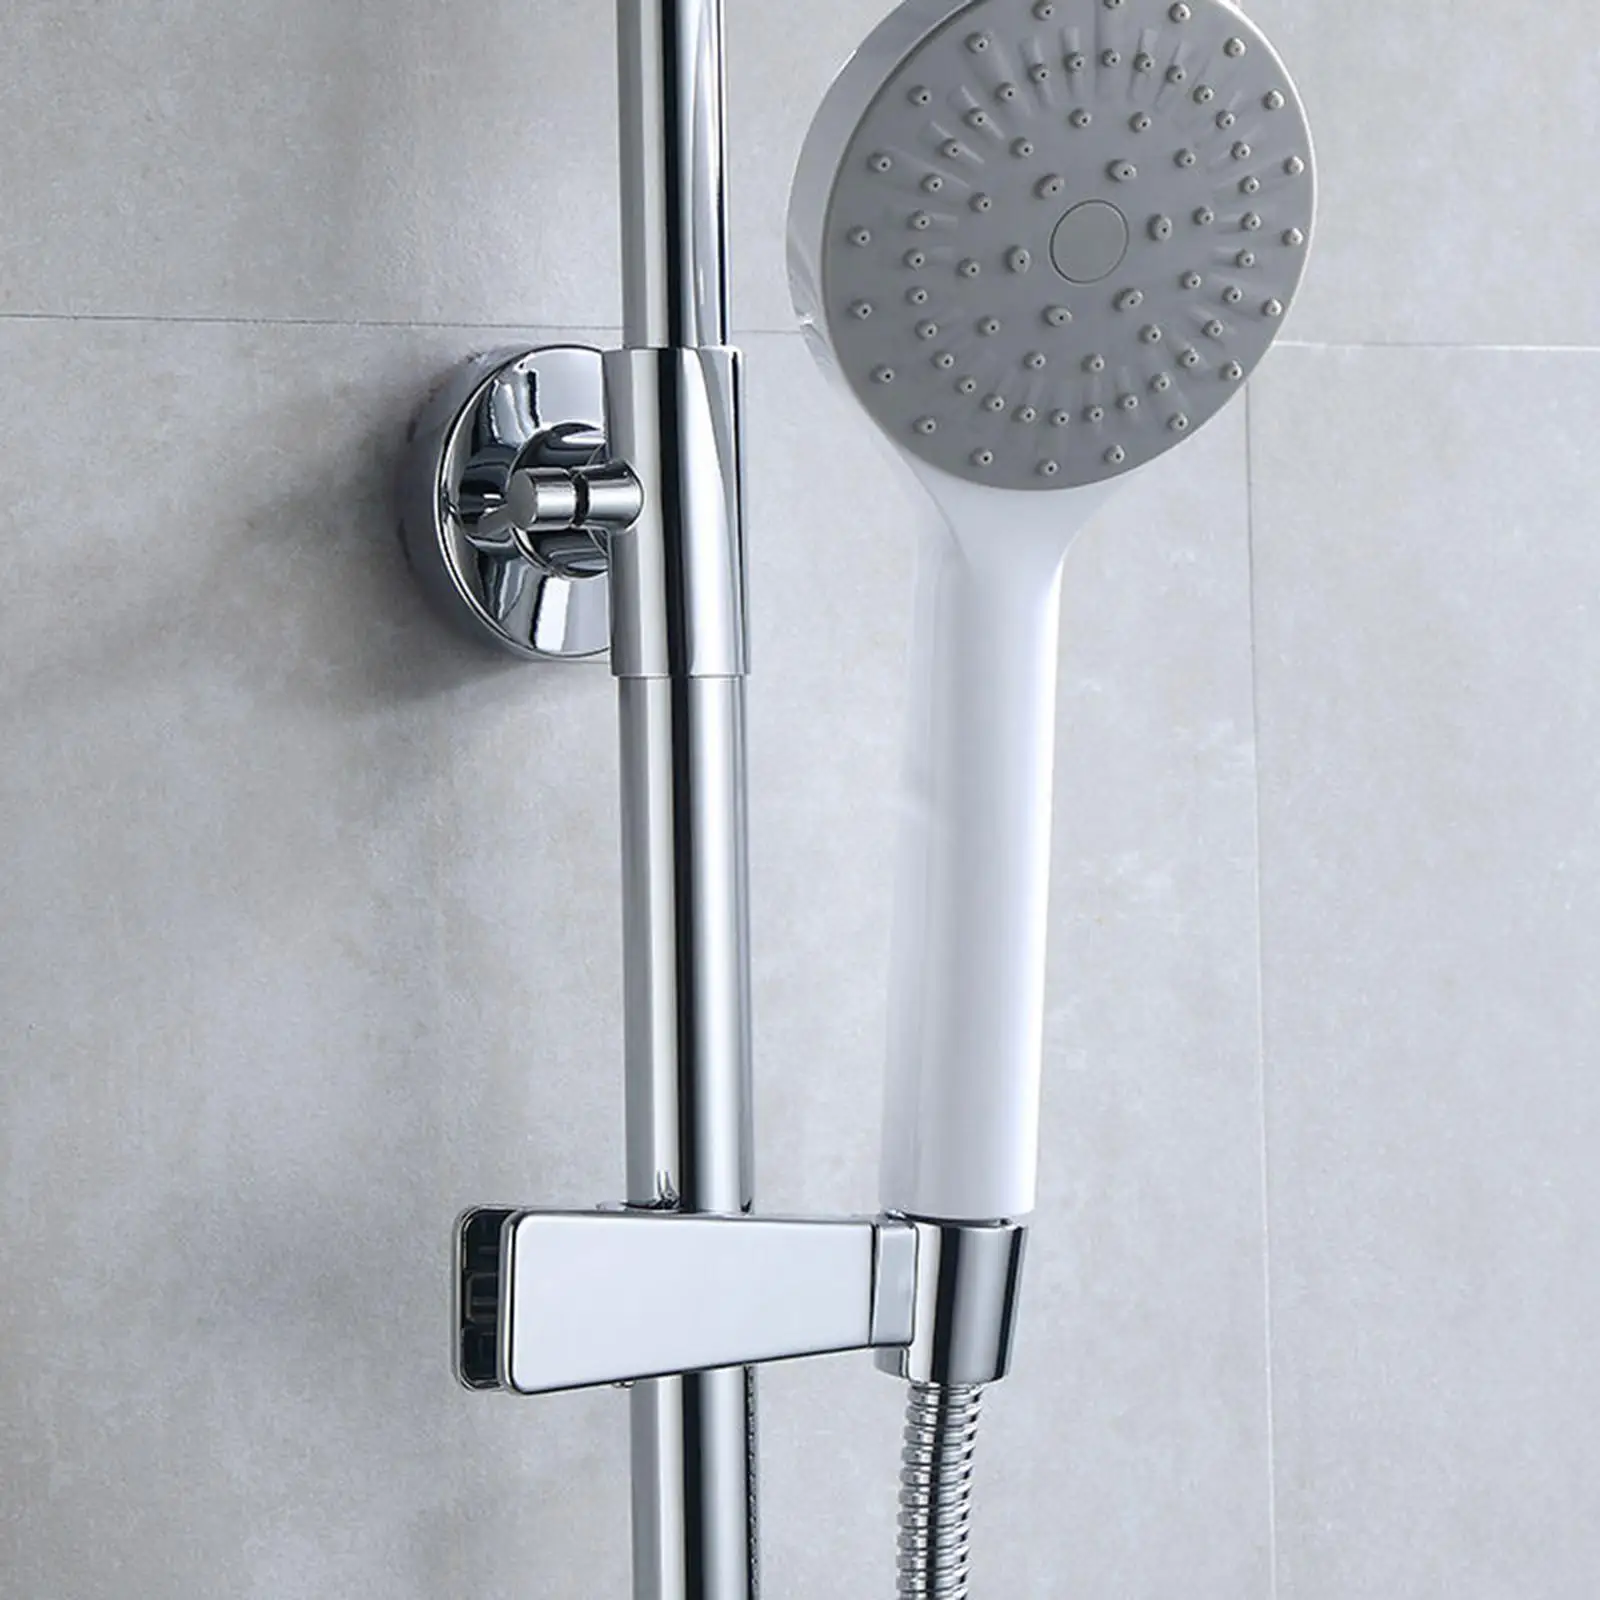 Sprayer Holder Shower Head Holders Press Clamp Spray Holder Shower Head Adjustable Head Bracket Holder for Bathroom Slider Pole